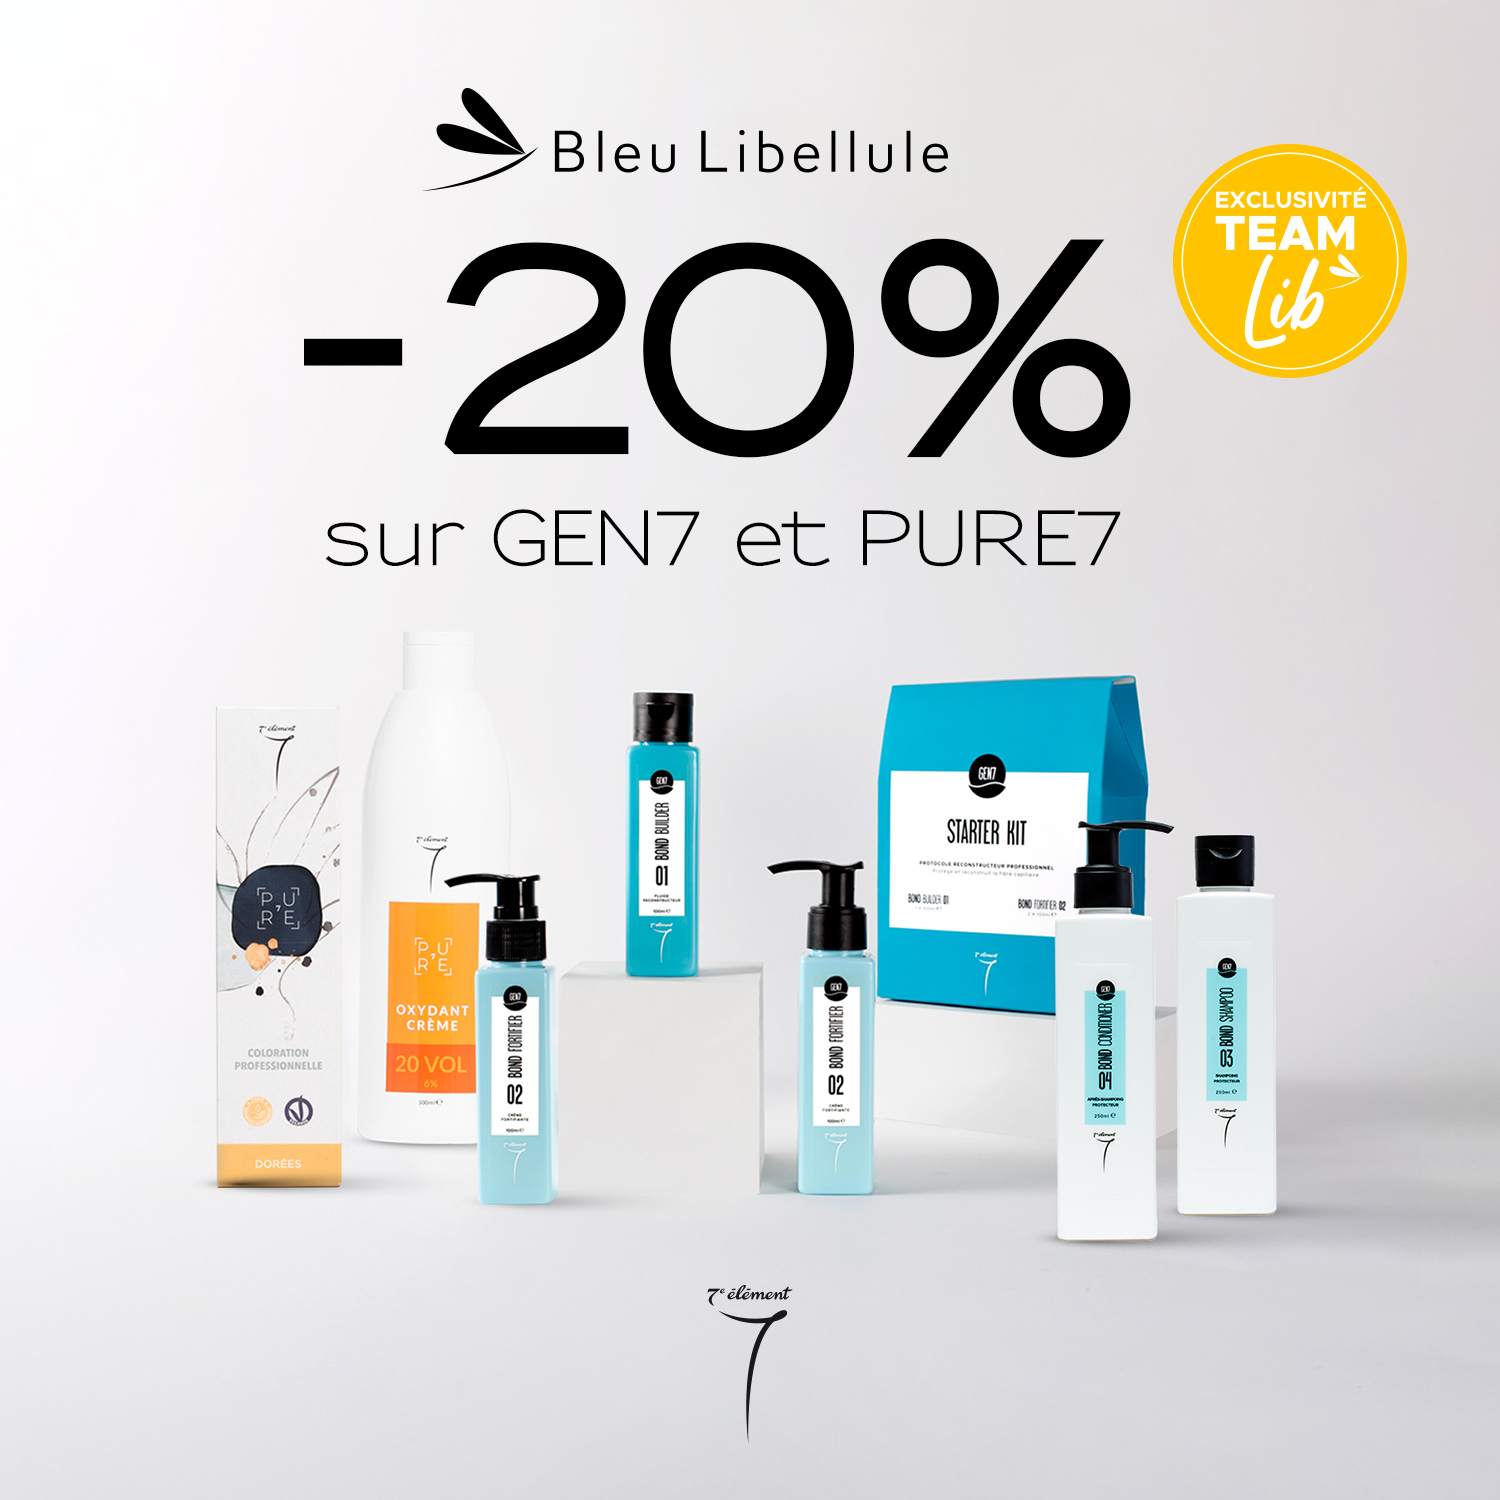 Villebon 2 - Gen7 et Pure7 chez Bleu Libellule ! - - 1